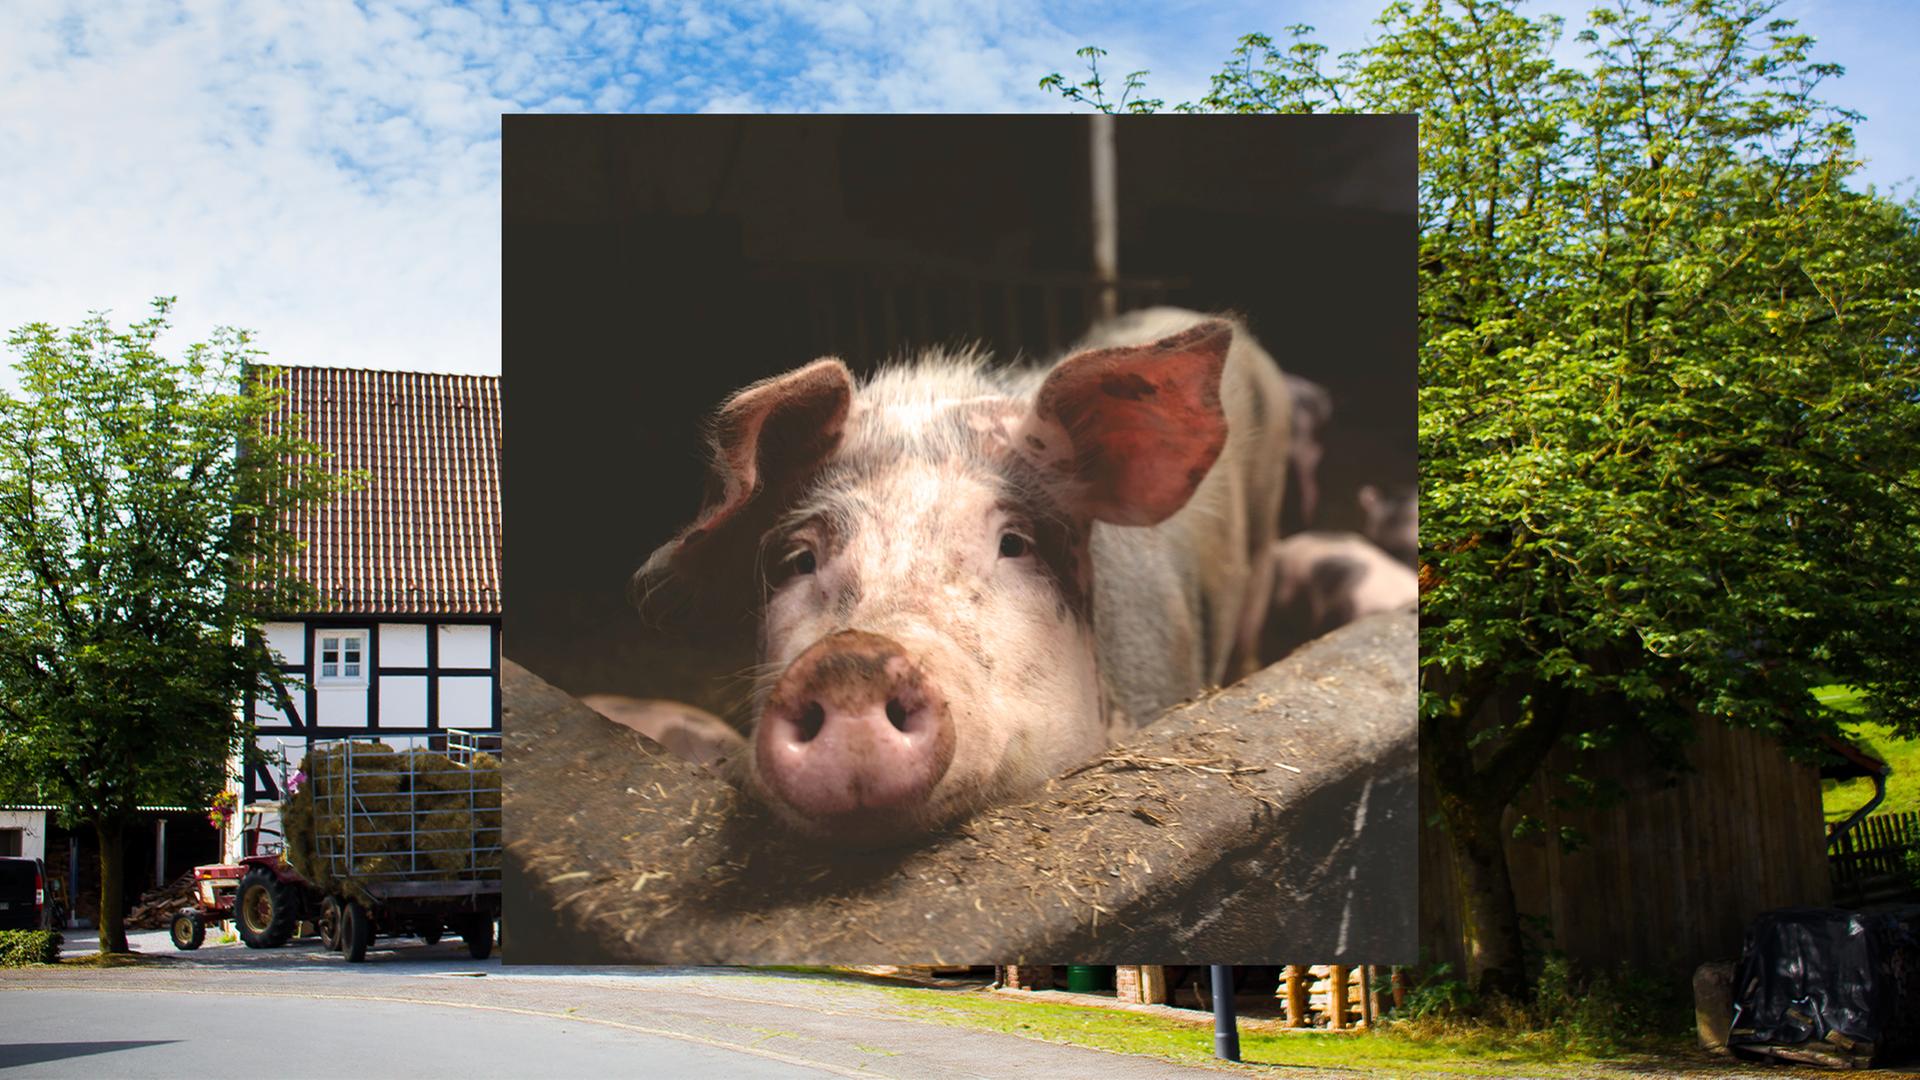 Bild in Bild: Vorn ein Schwein in einem Stall. Hintergrund: Bauernhäuser.